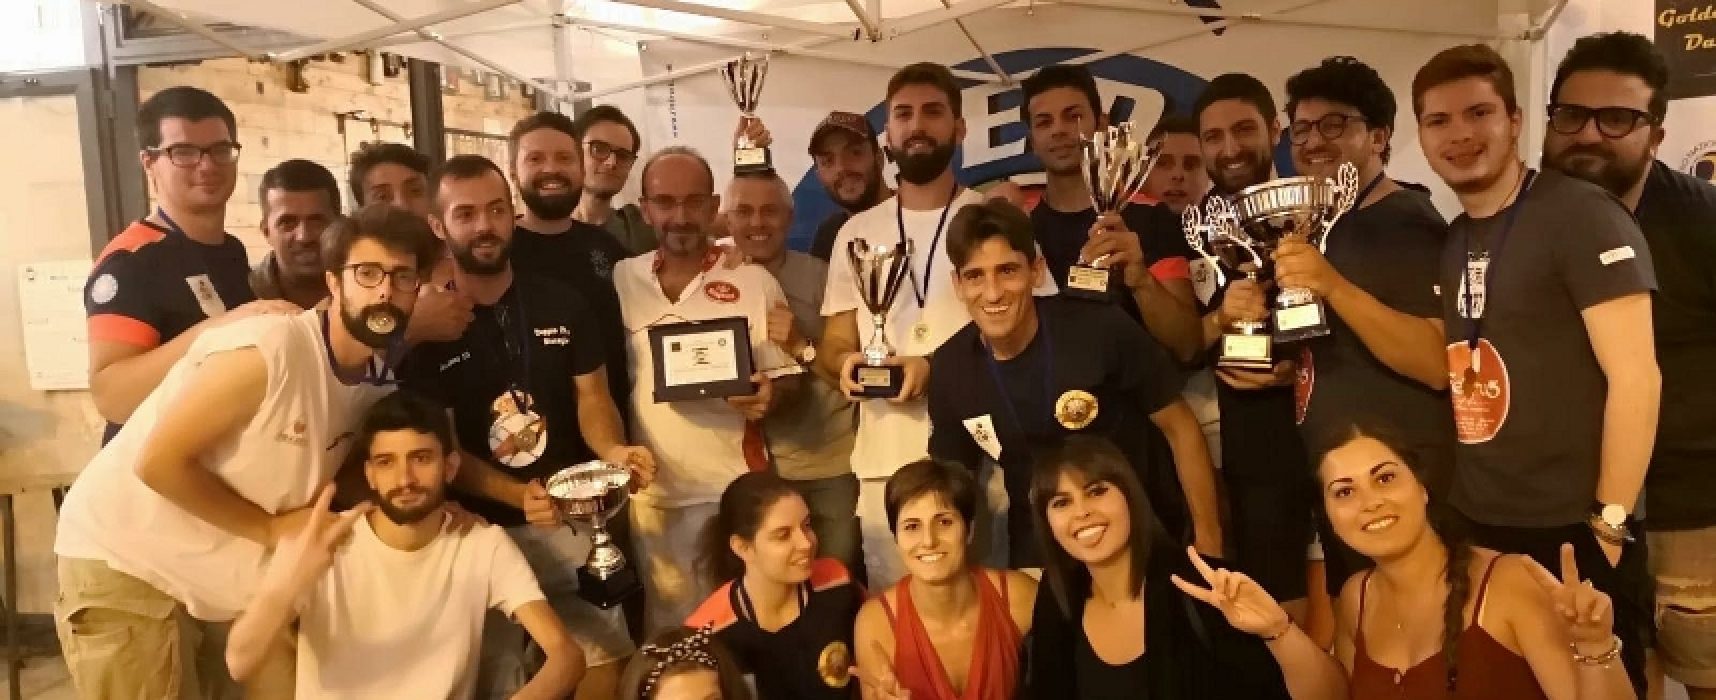 L’Apulia Golden Dart organizza torneo di beneficenza in favore dei bambini in difficoltà